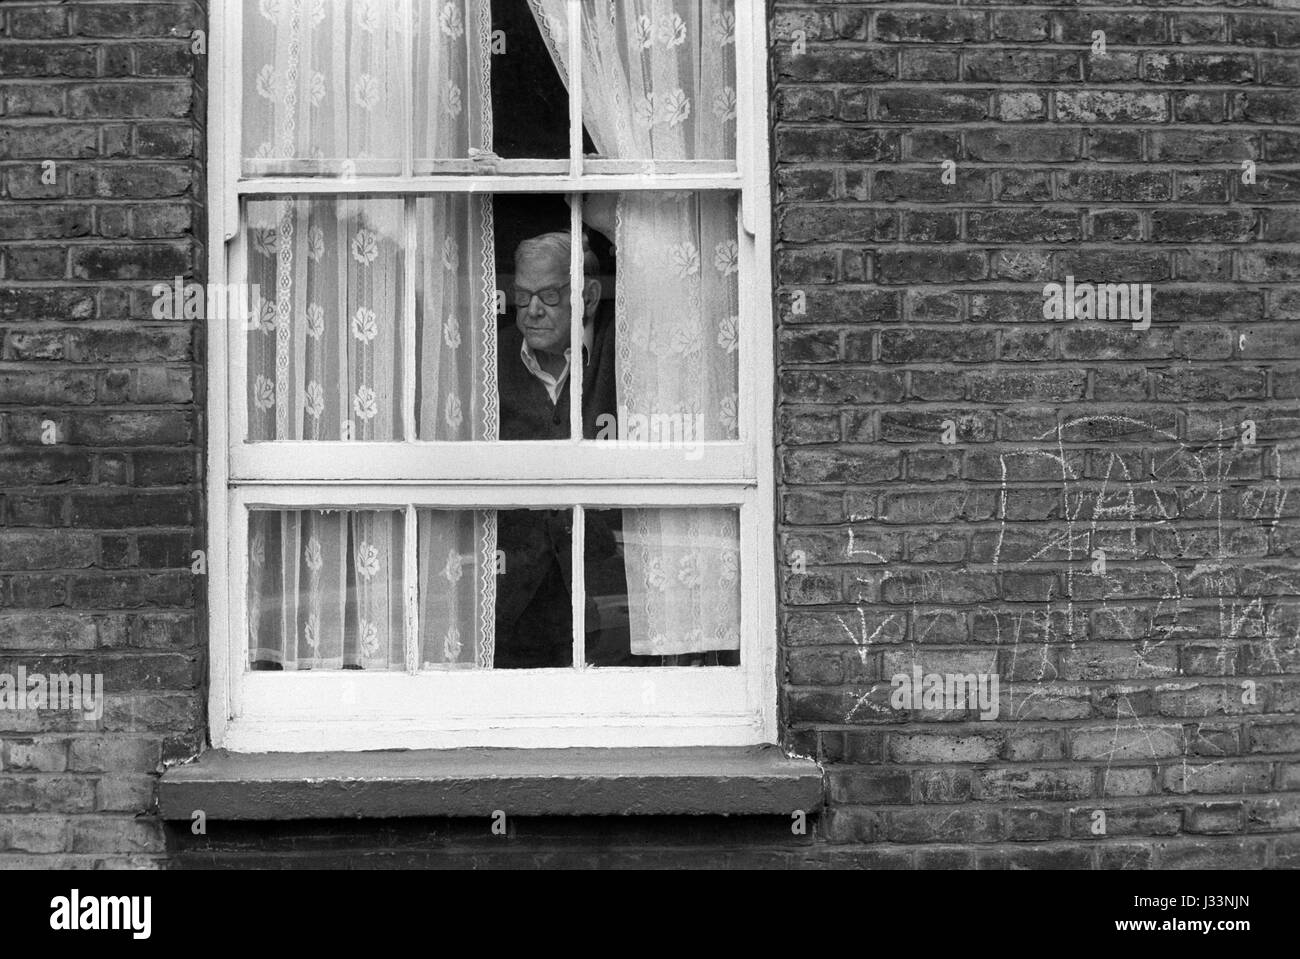 Allein ein älterer Mann, der aus dem Fenster blickt, durch Netzvorhänge 1970er Whitechapel, East End London 1975 UK HOMER SYKES Stockfoto